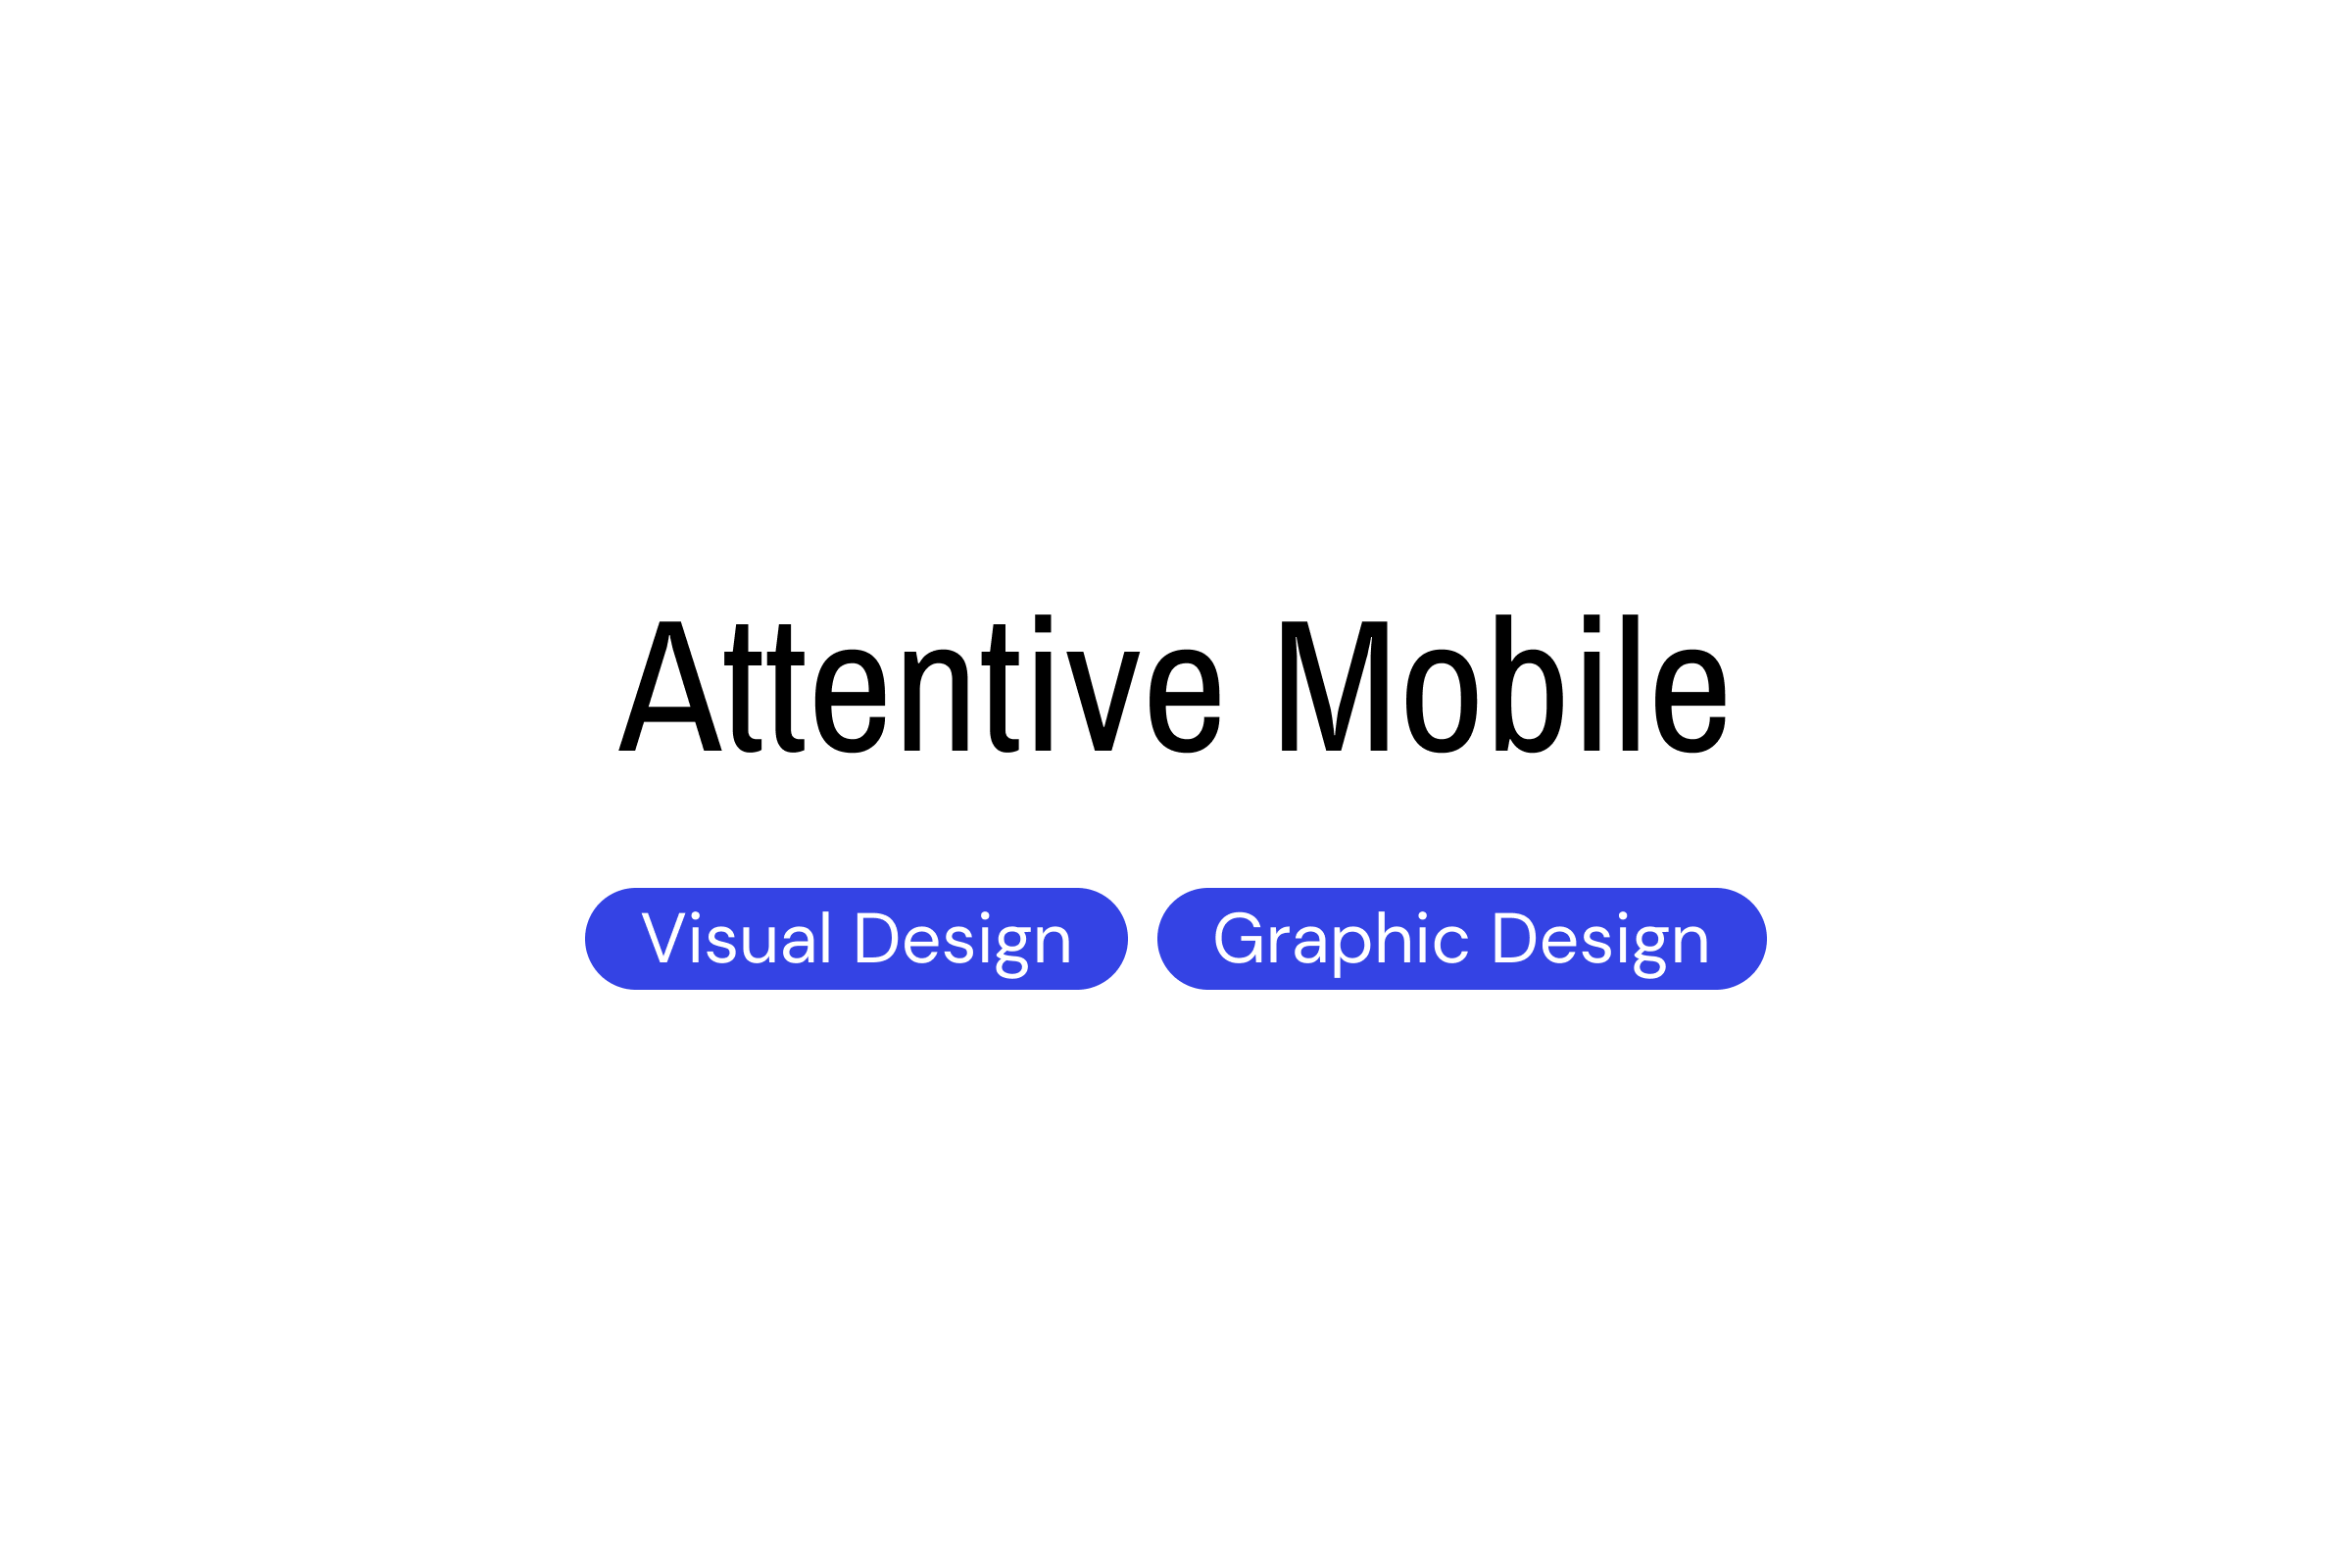 Attentive Mobile | Skills: Visual Design, Graphic Design